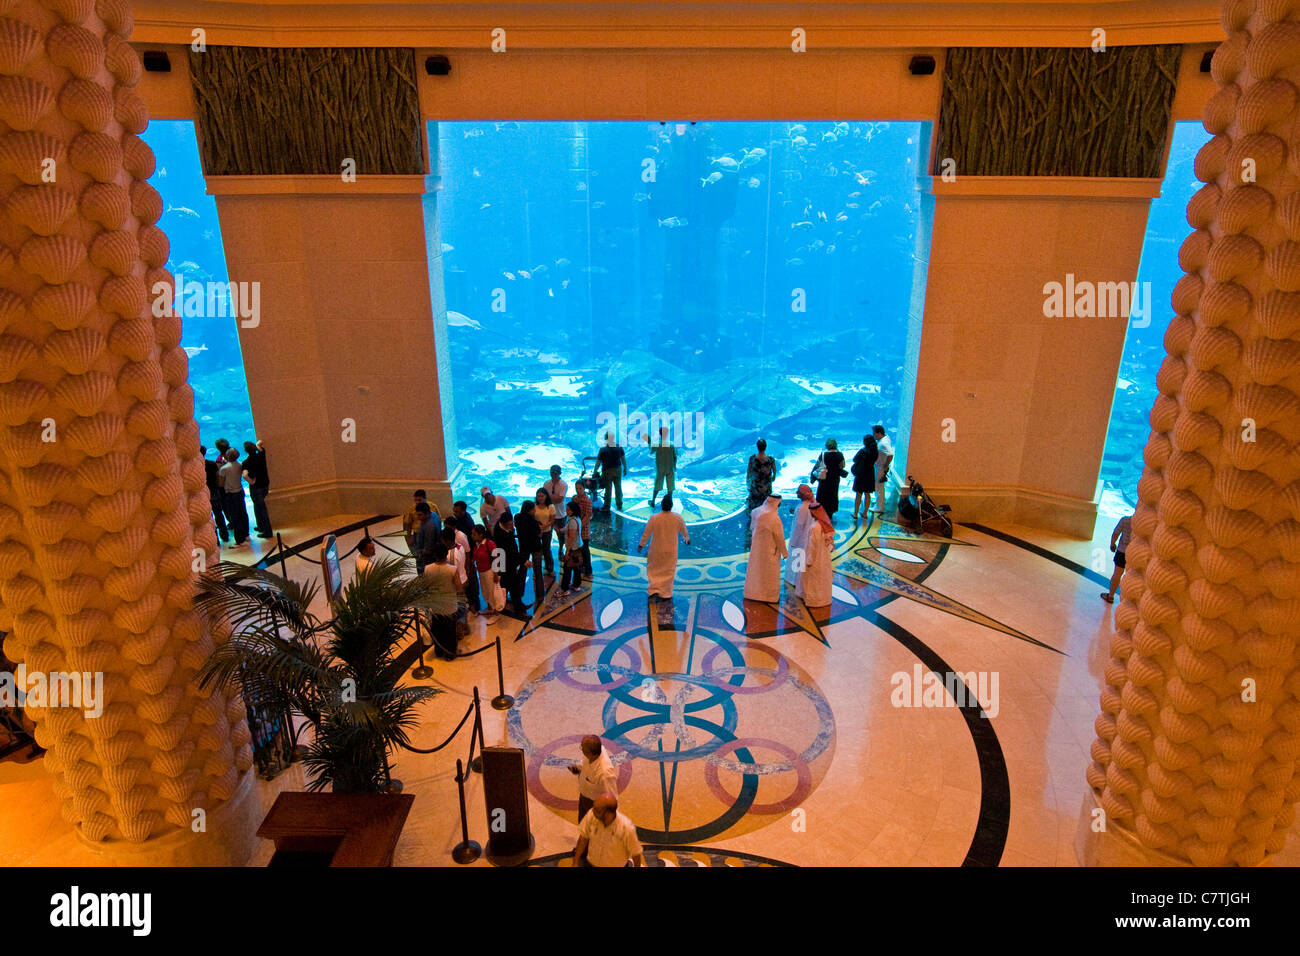 Dubai, United Arab Emirates, the aquarium in the Atlantis Palm Hotel Stock Photo